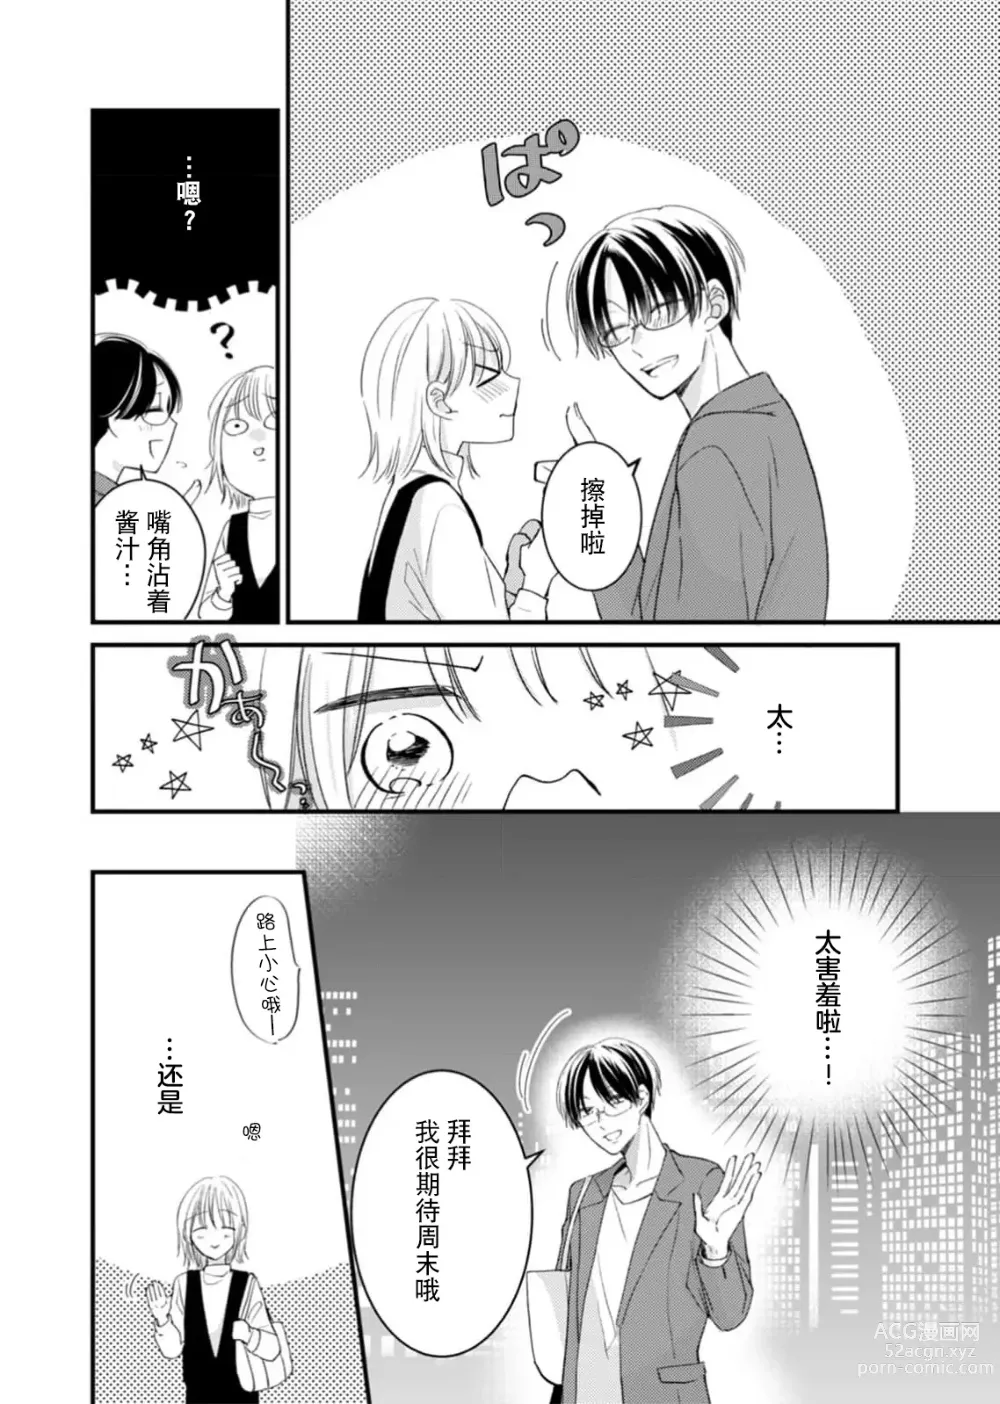 Page 7 of manga 「…那我不忍耐了哦？」在最深处好几次…年上男友的绝妙开关